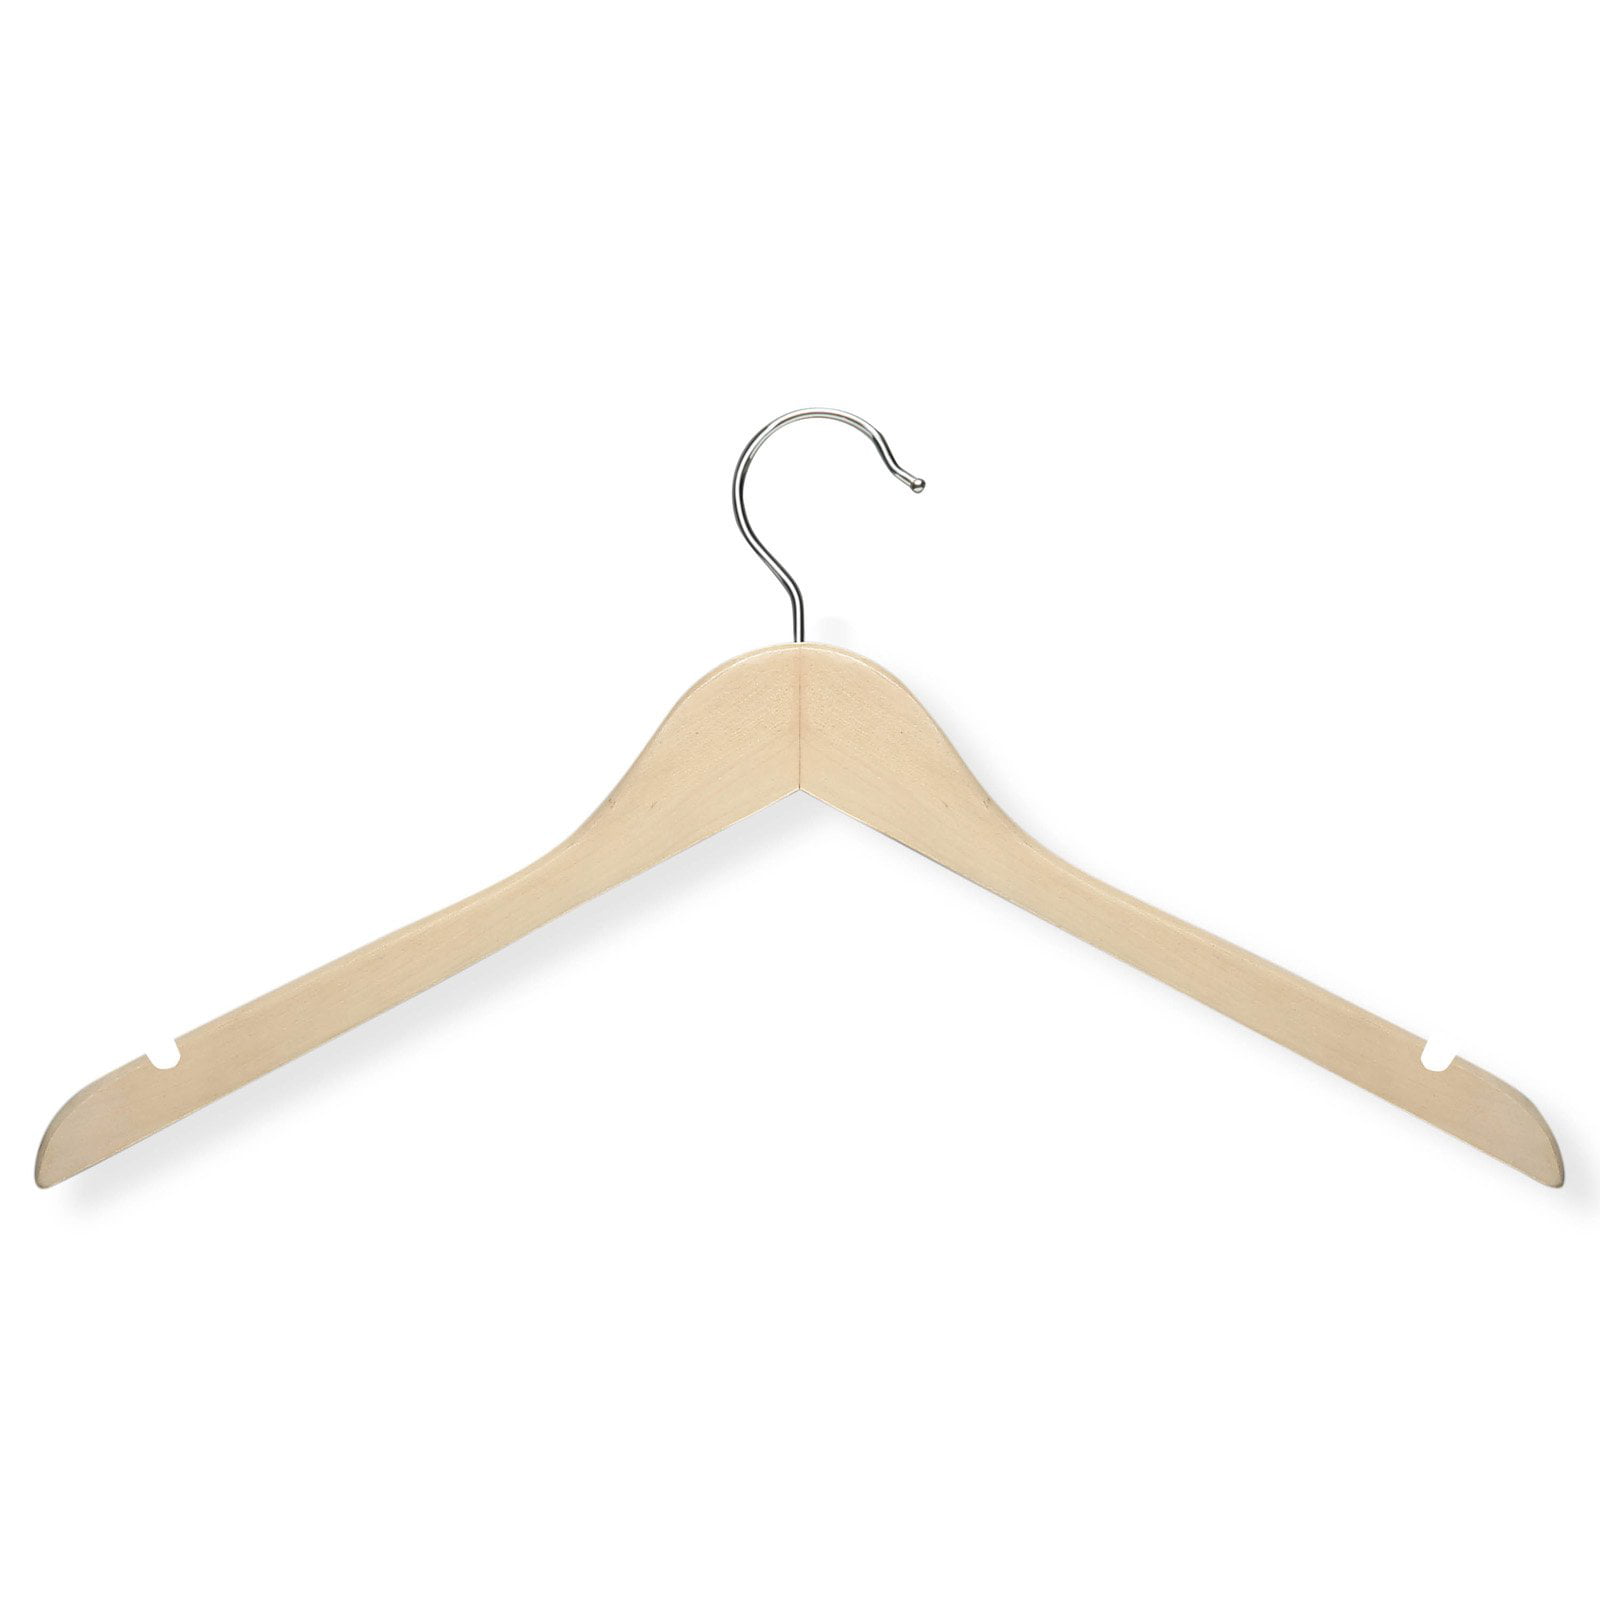 wooden shirt hangers